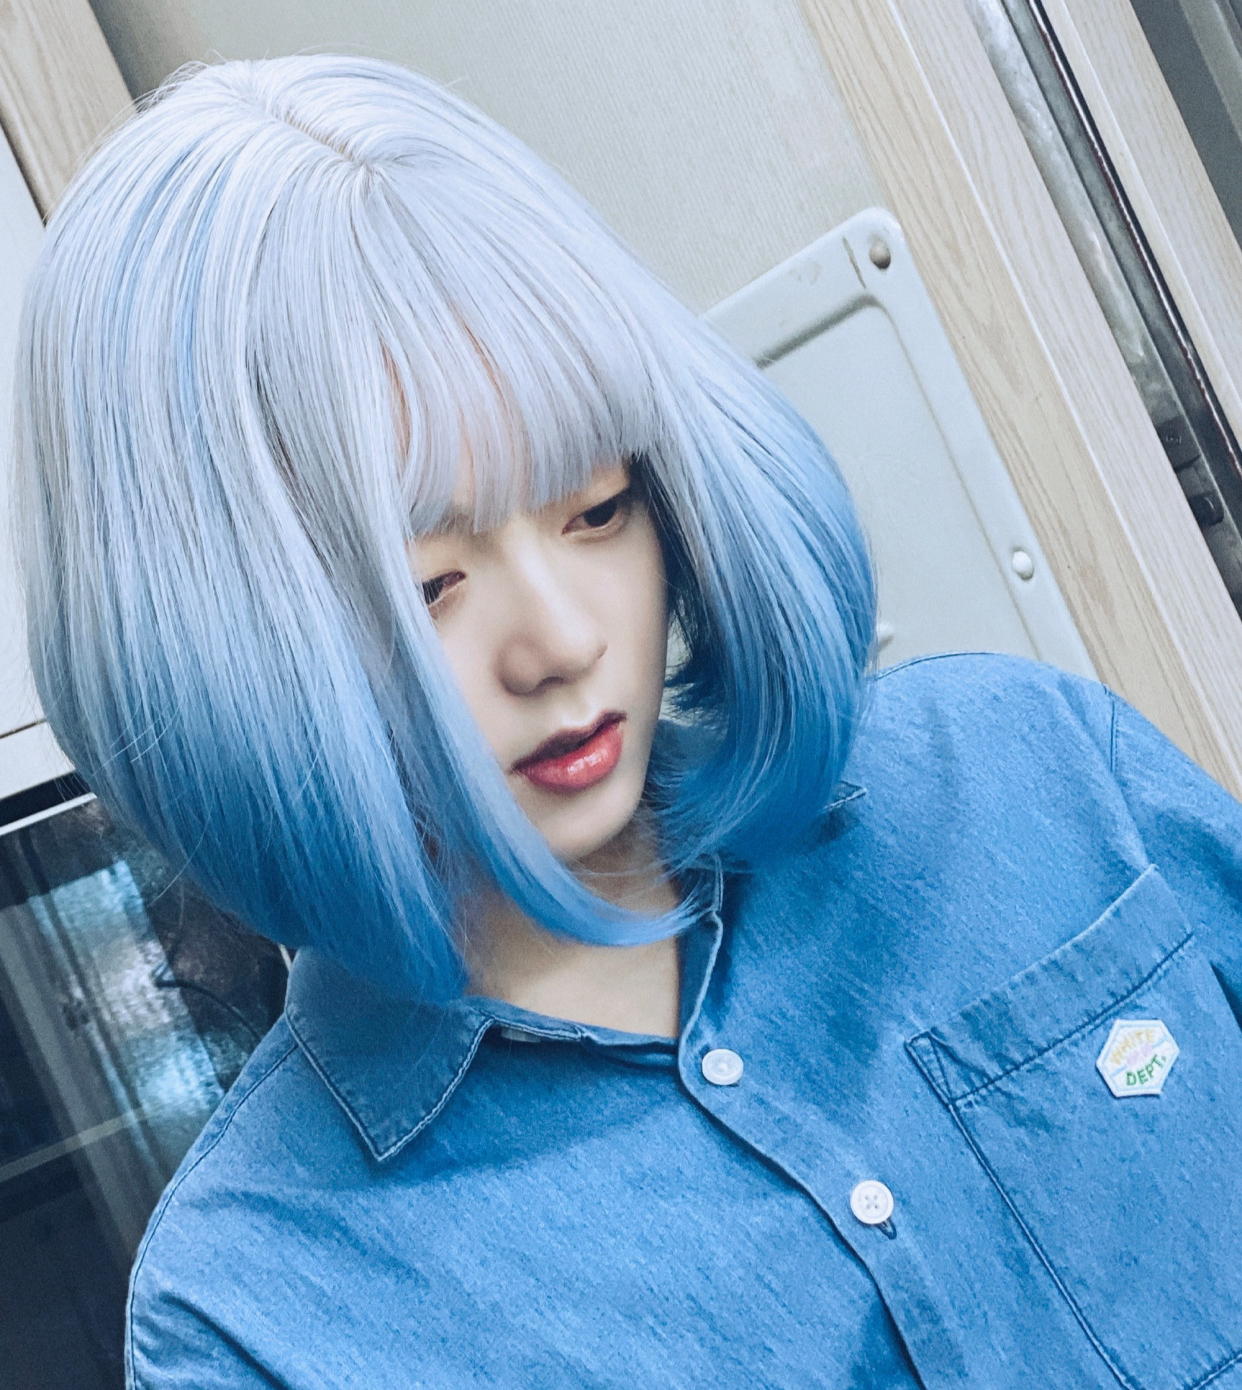 原以为赵今麦长发够美了,看到她的蓝色短发,才知道是女大十八变